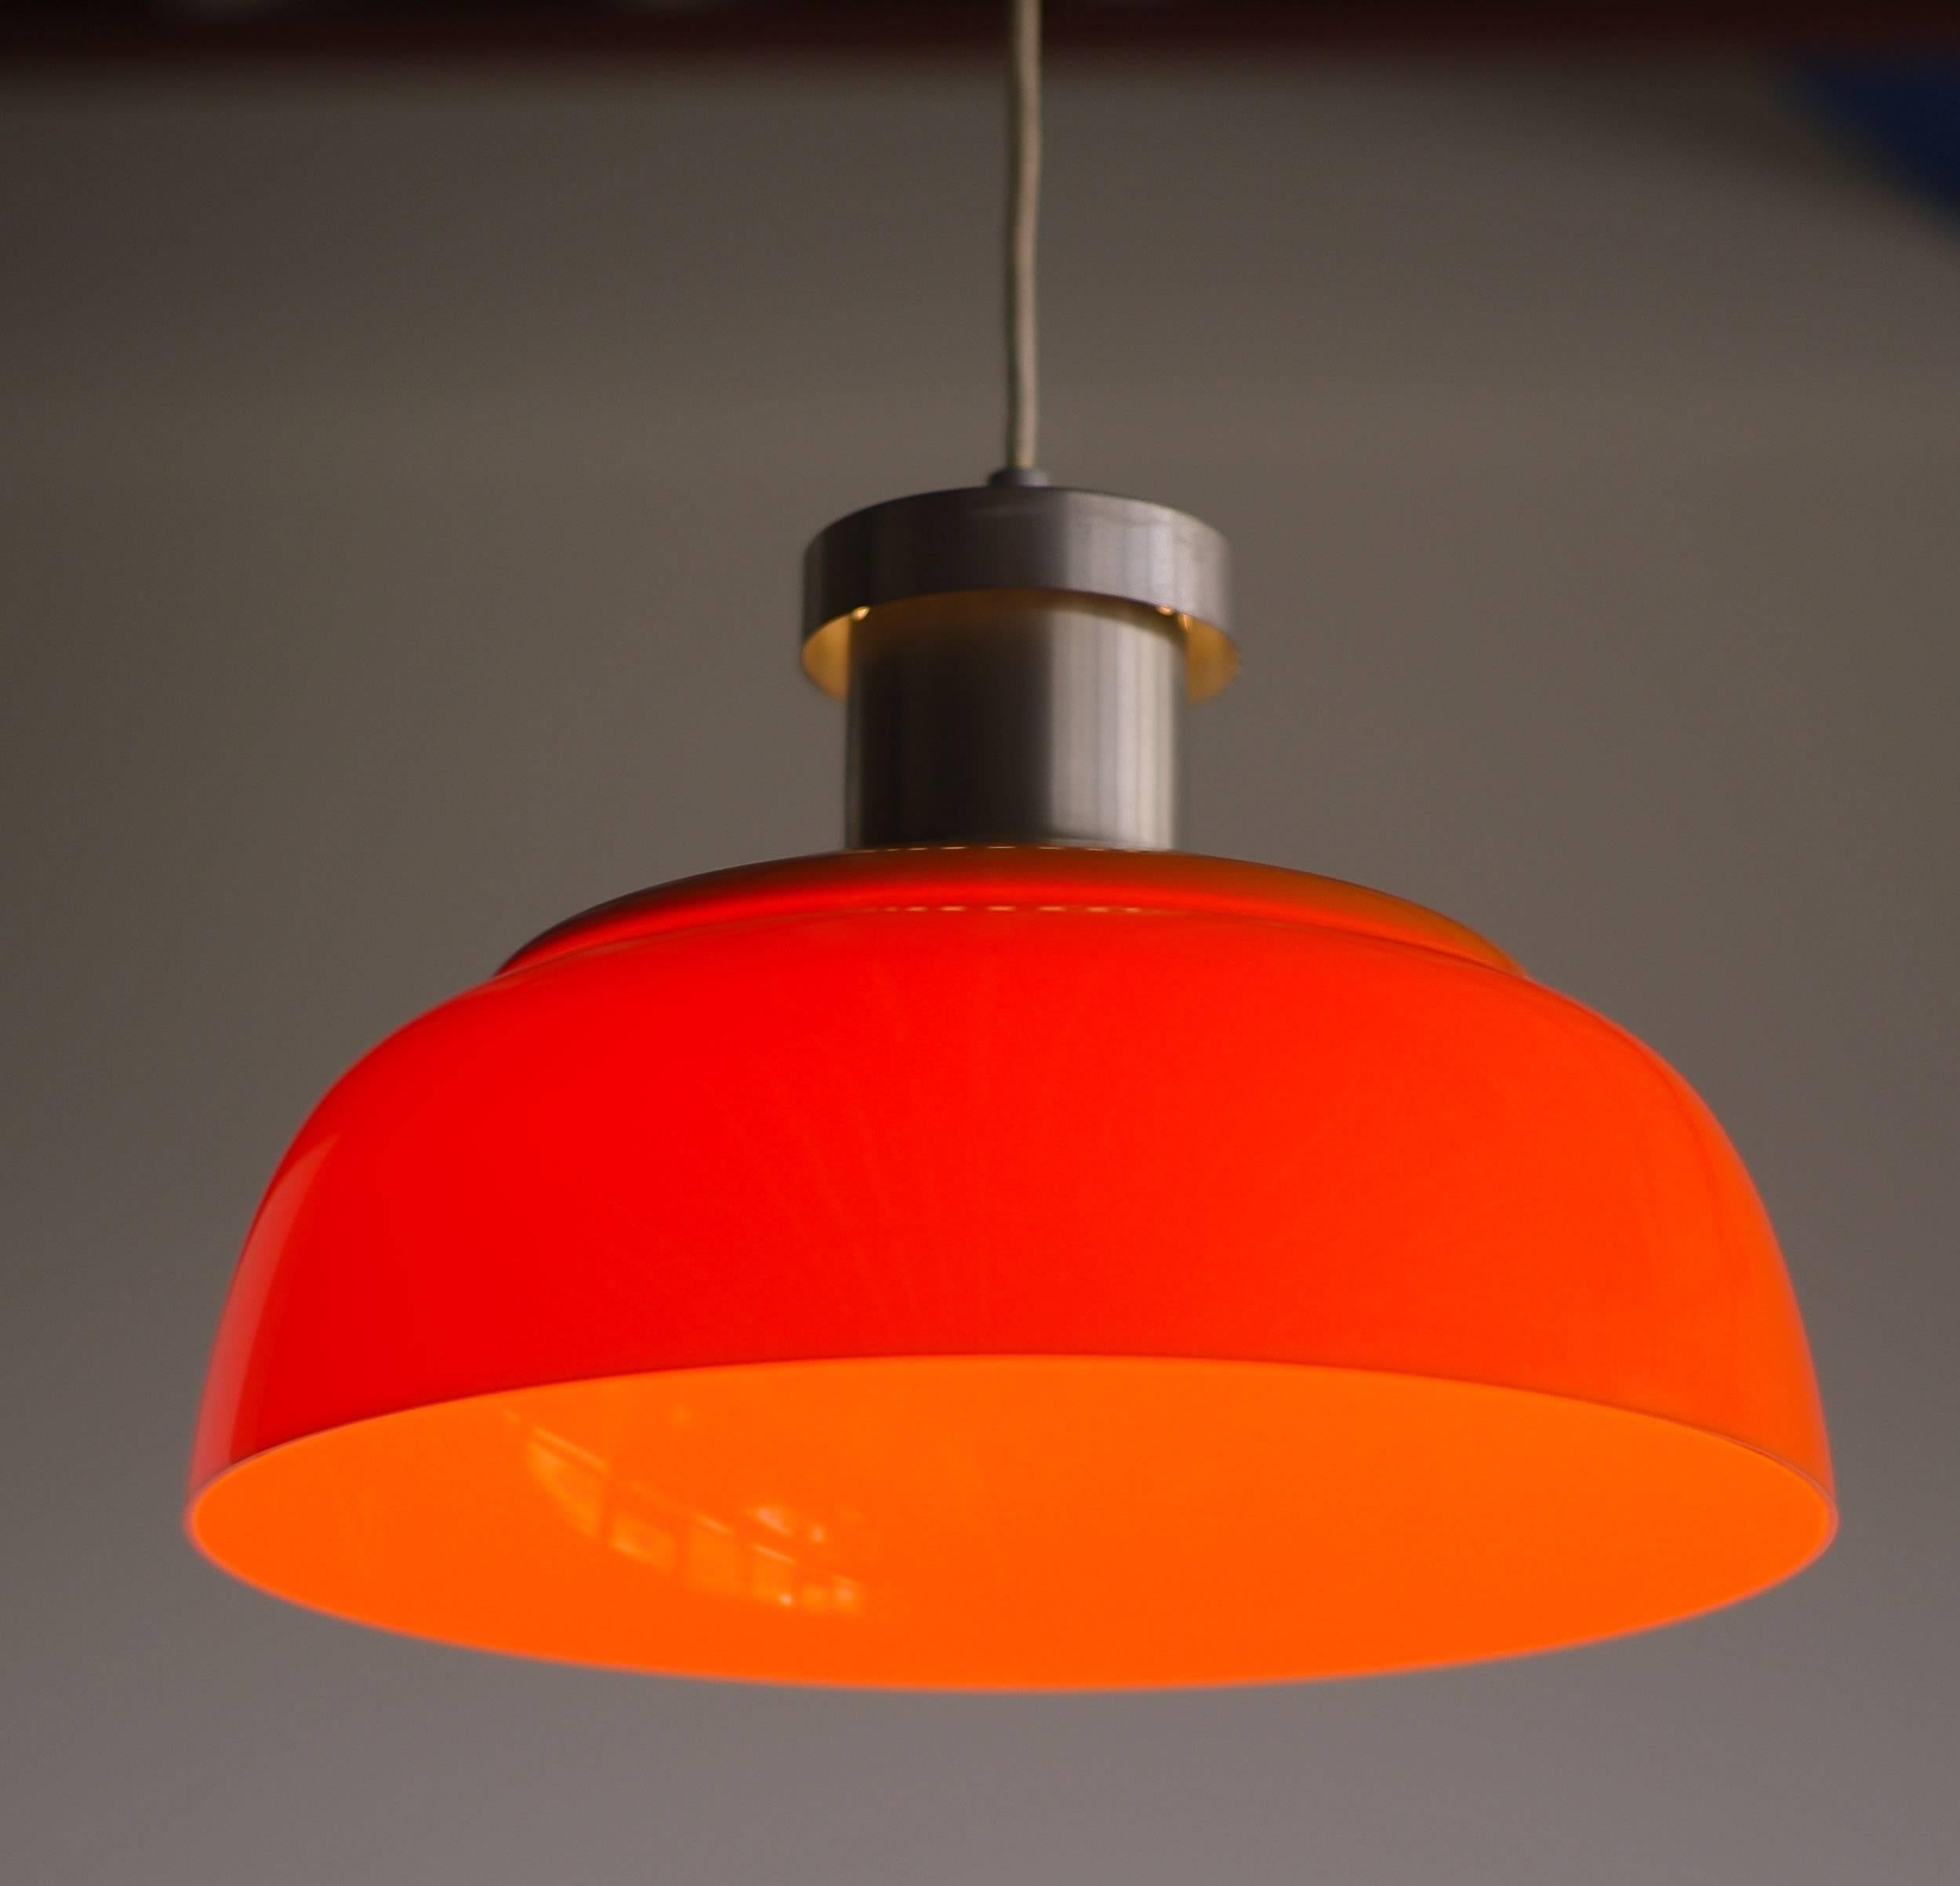 Mid-Century Modern Orange Pendant Lamp 4017 Designed by Achille Castiglioni for Kartell